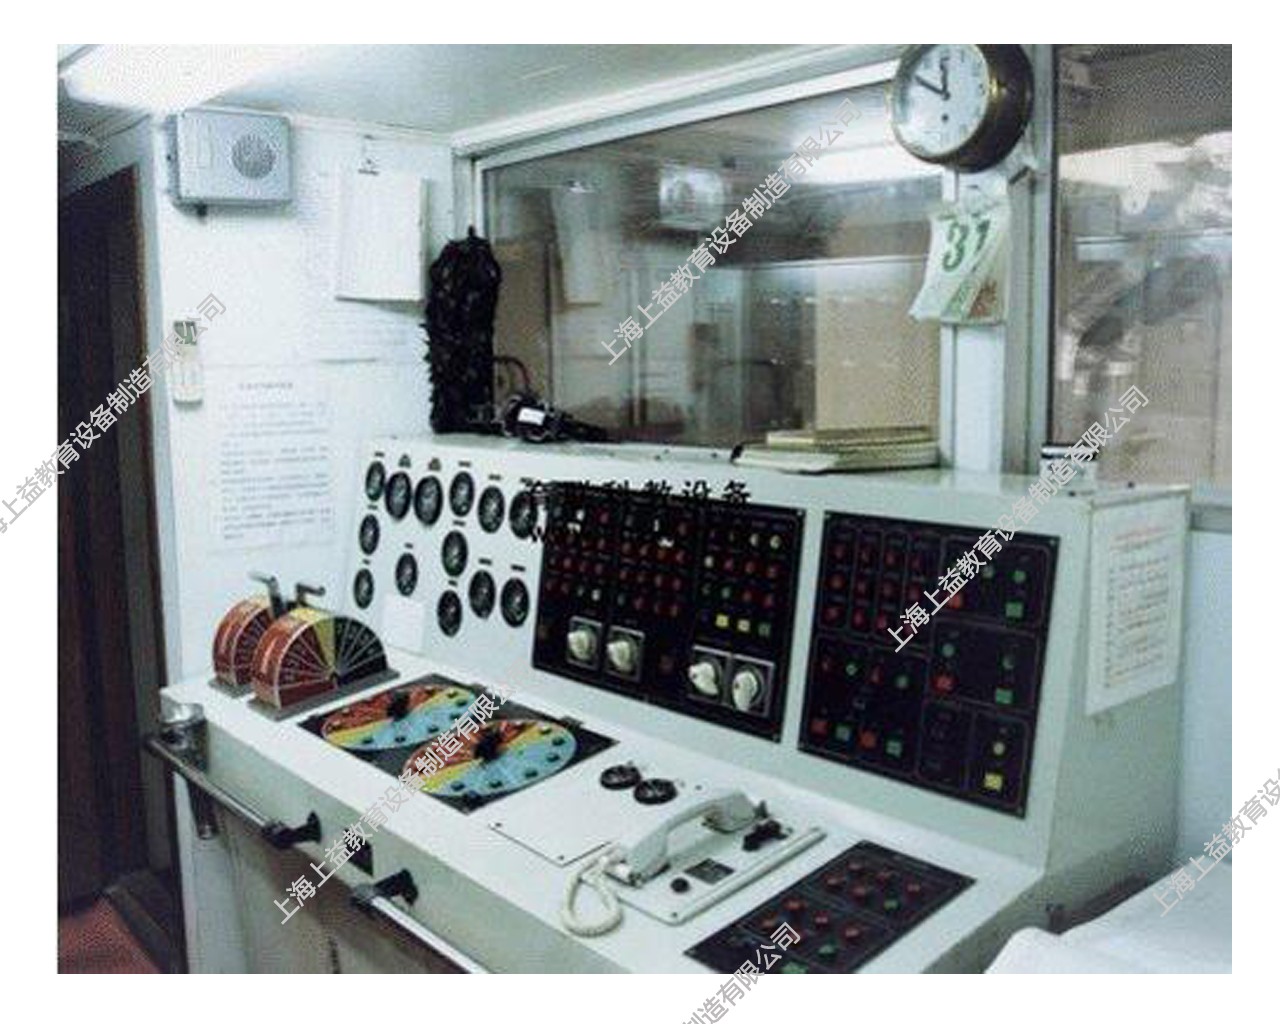 SYCBK-13船舶机舱集中监视与报警实训装置